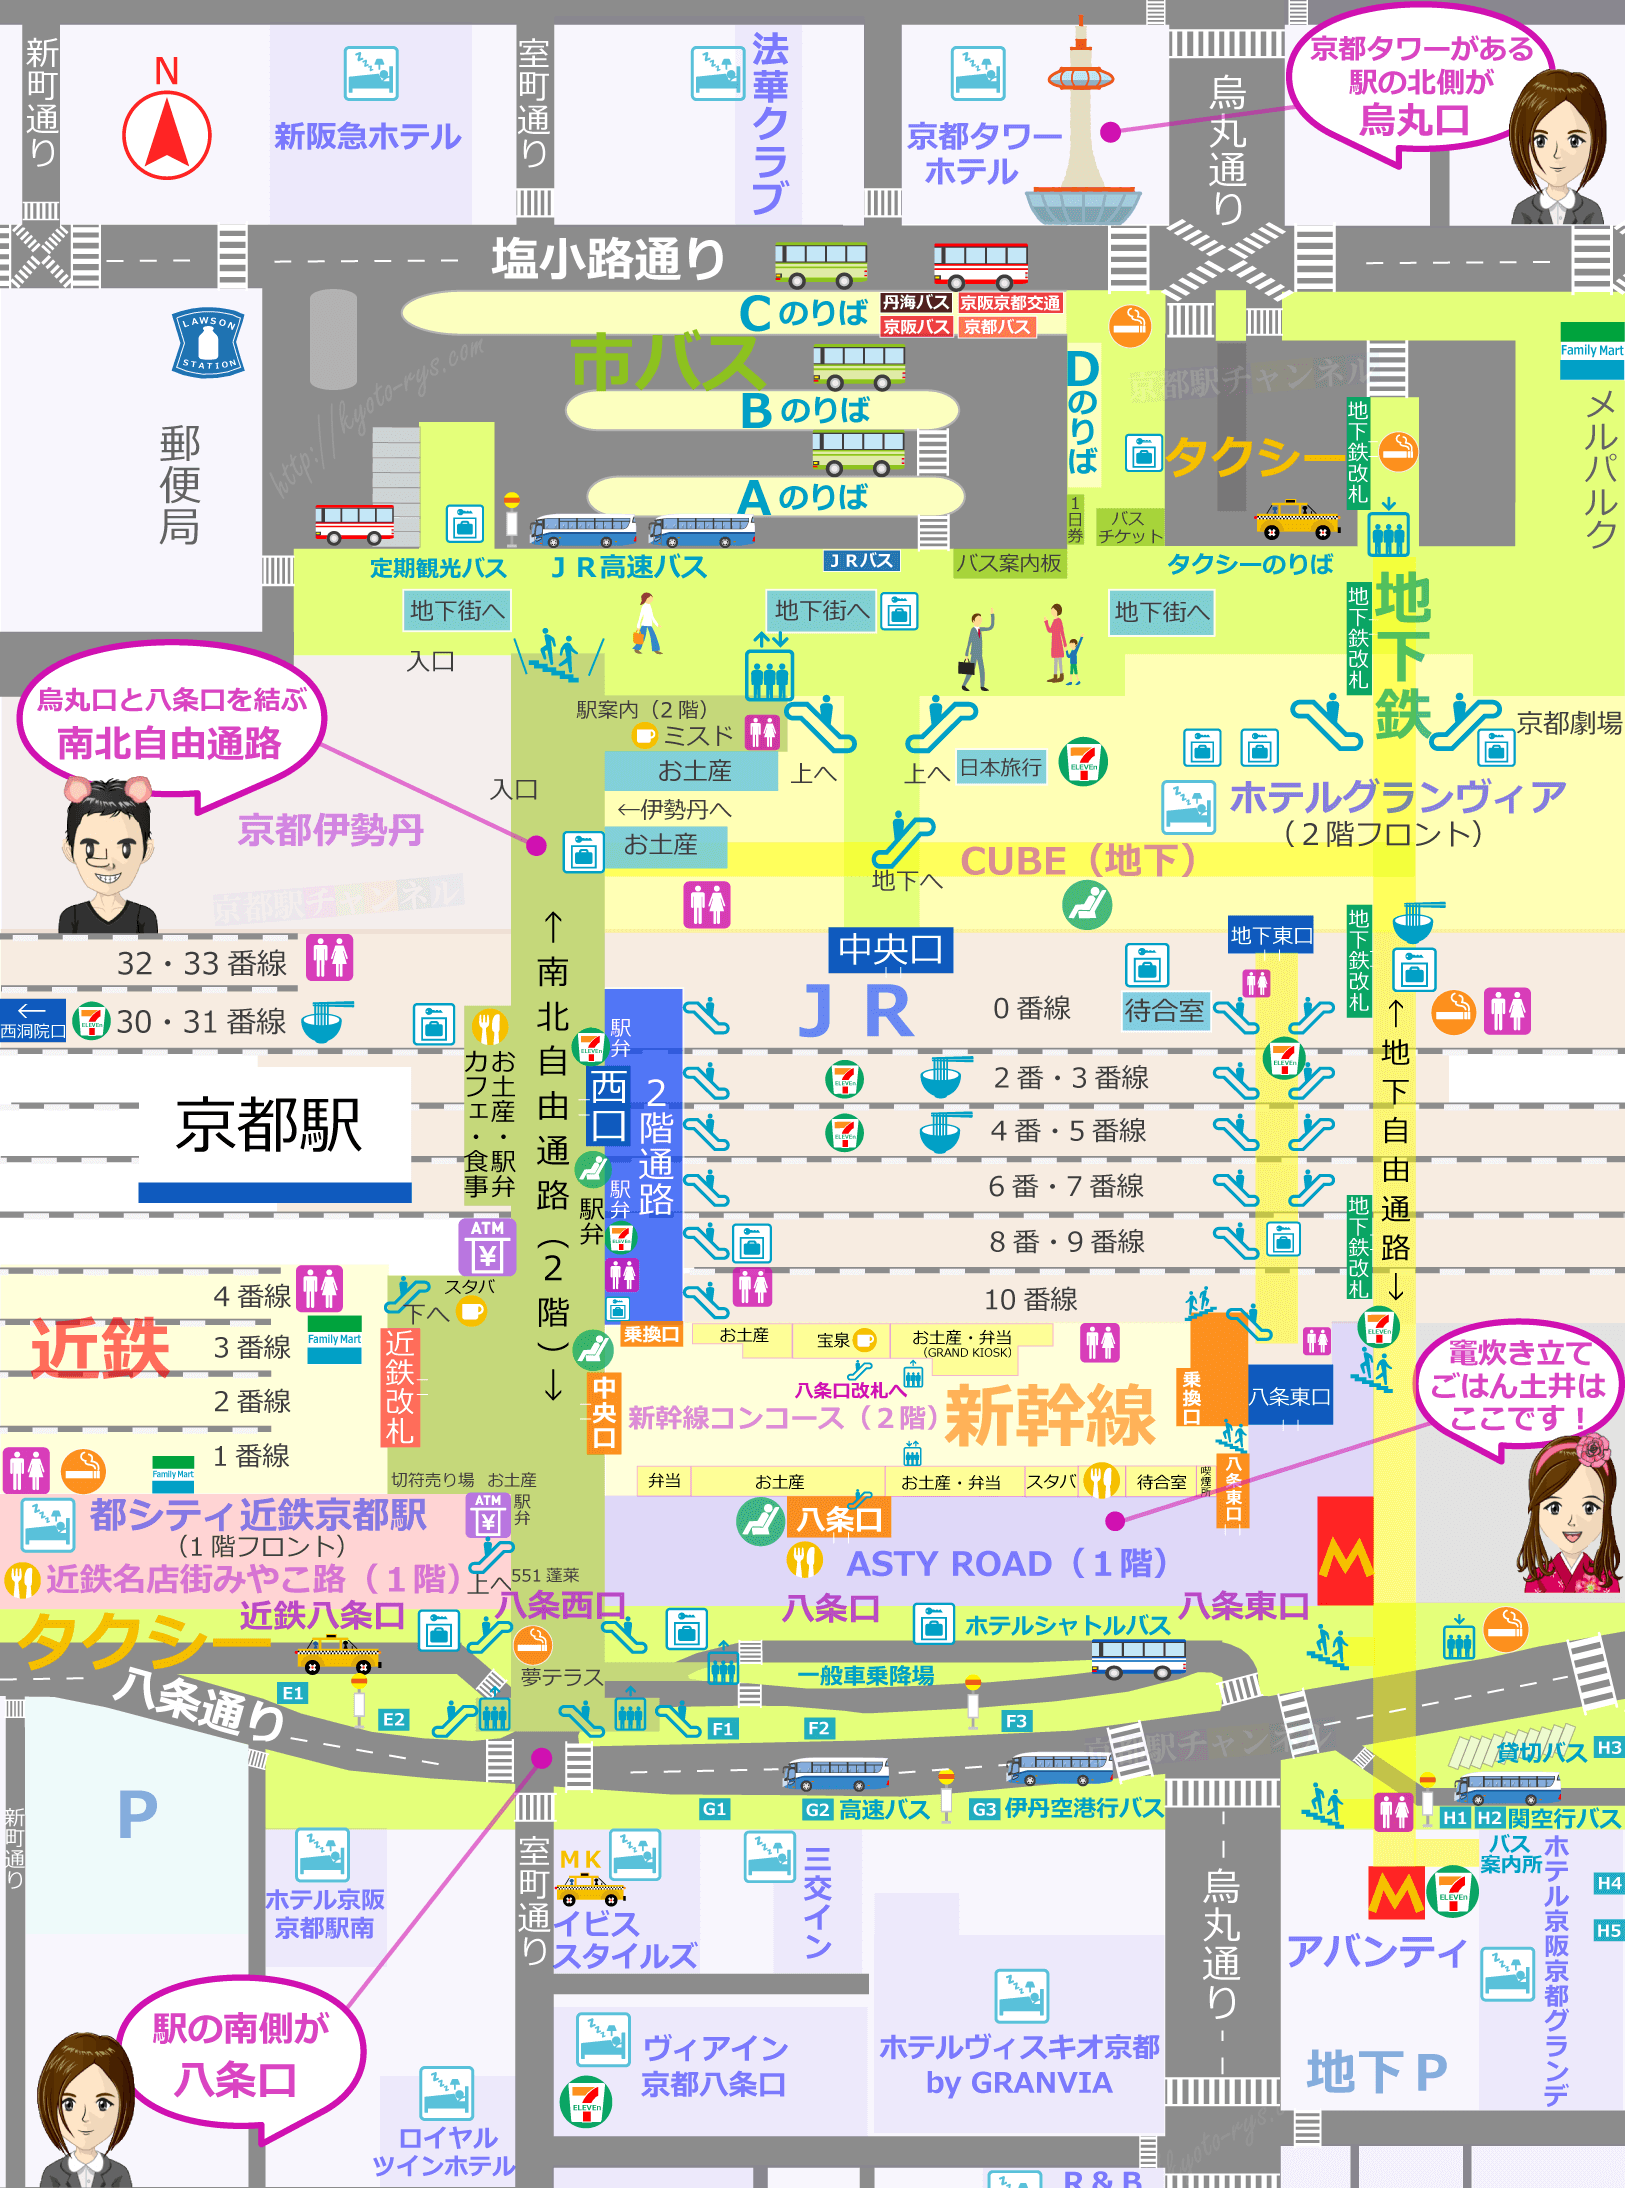 京都駅の構内図と竈炊き立てごはん土井の店舗マップ